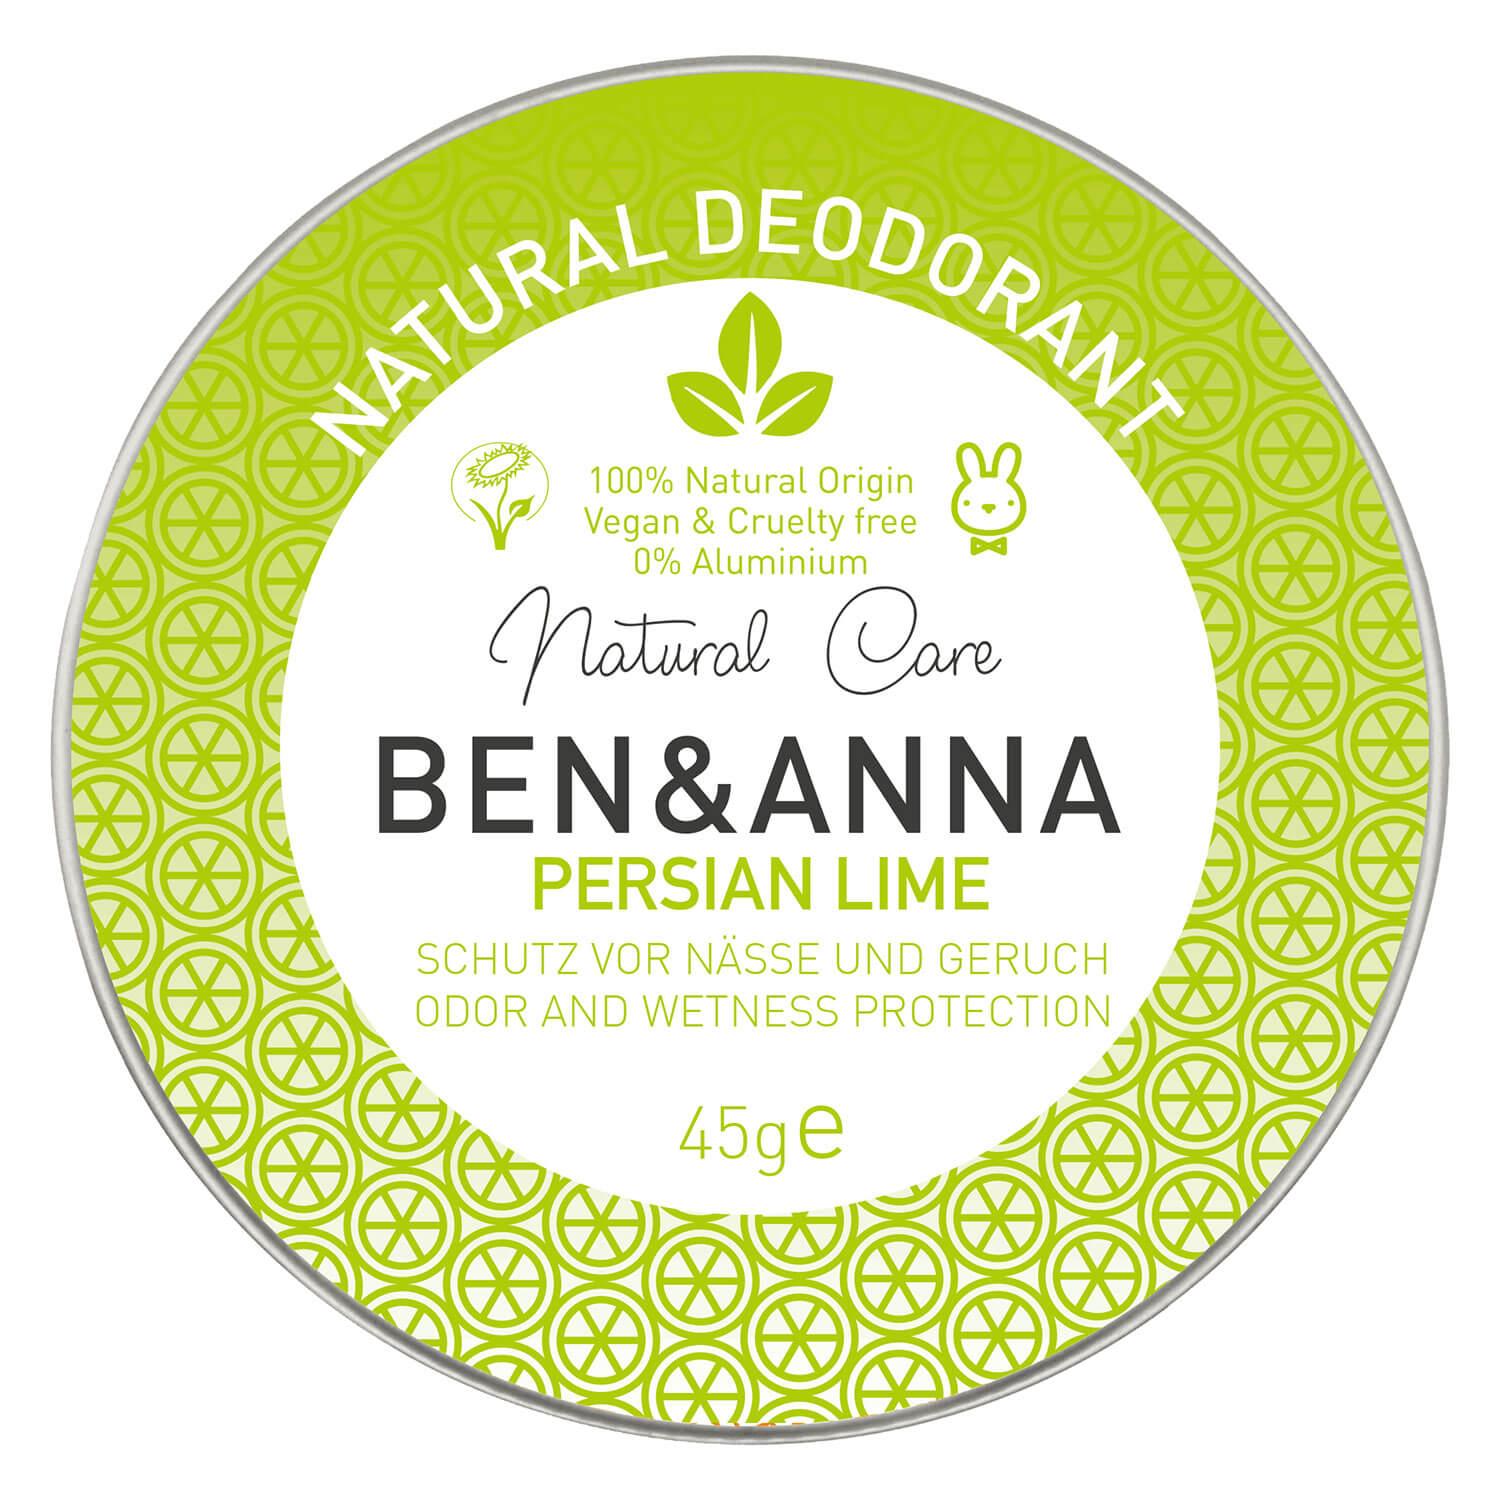 BEN&ANNA - Persian Lime Dose